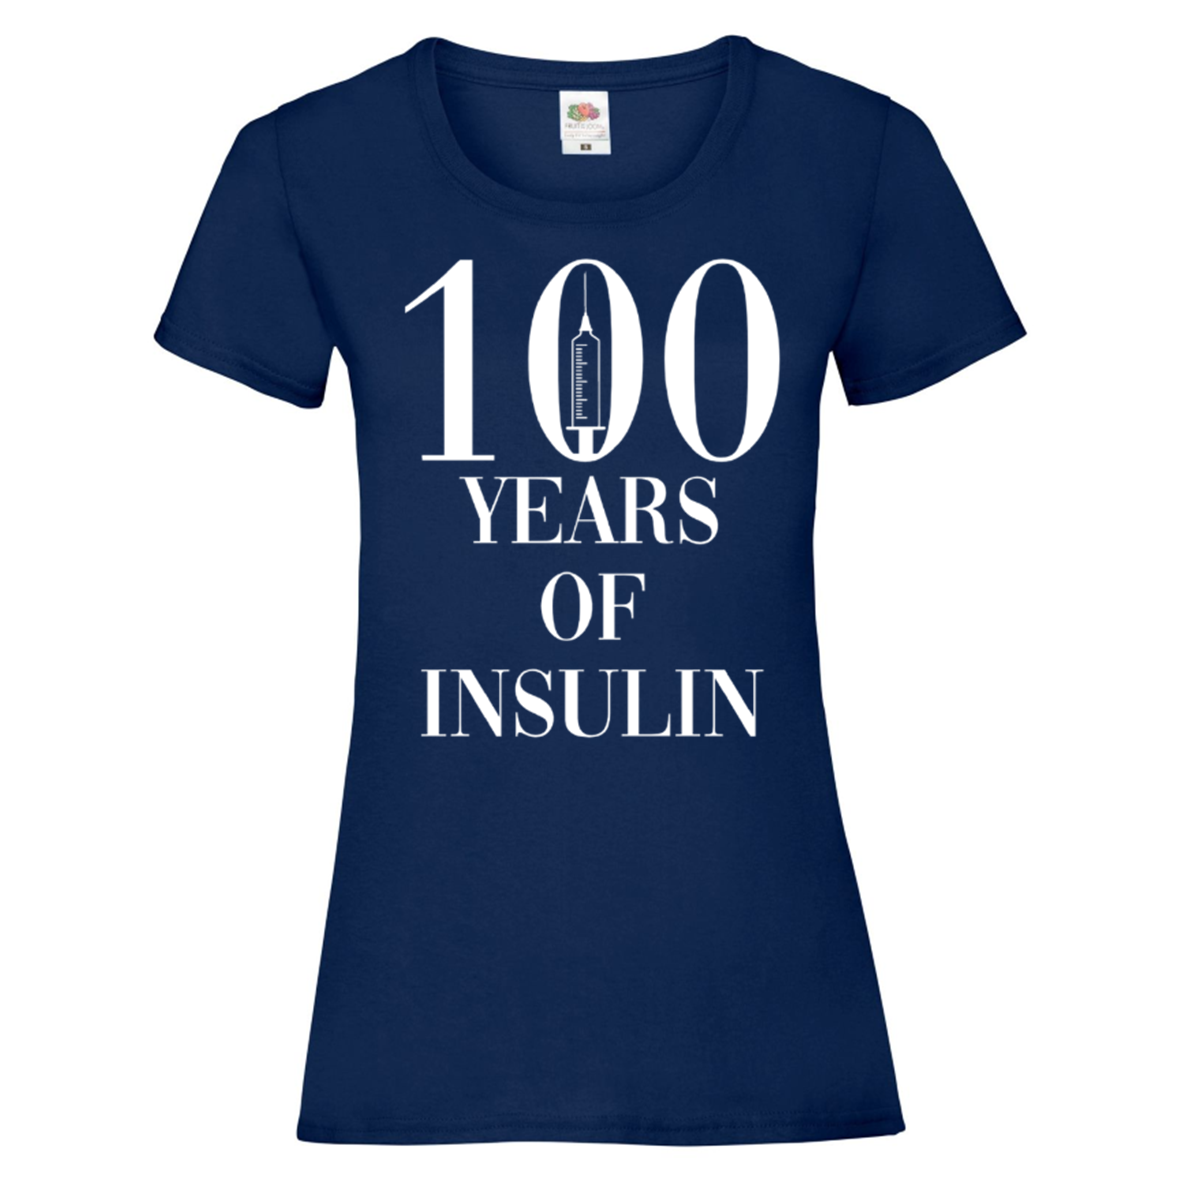 100 Years Of Insulin Women's T Shirt